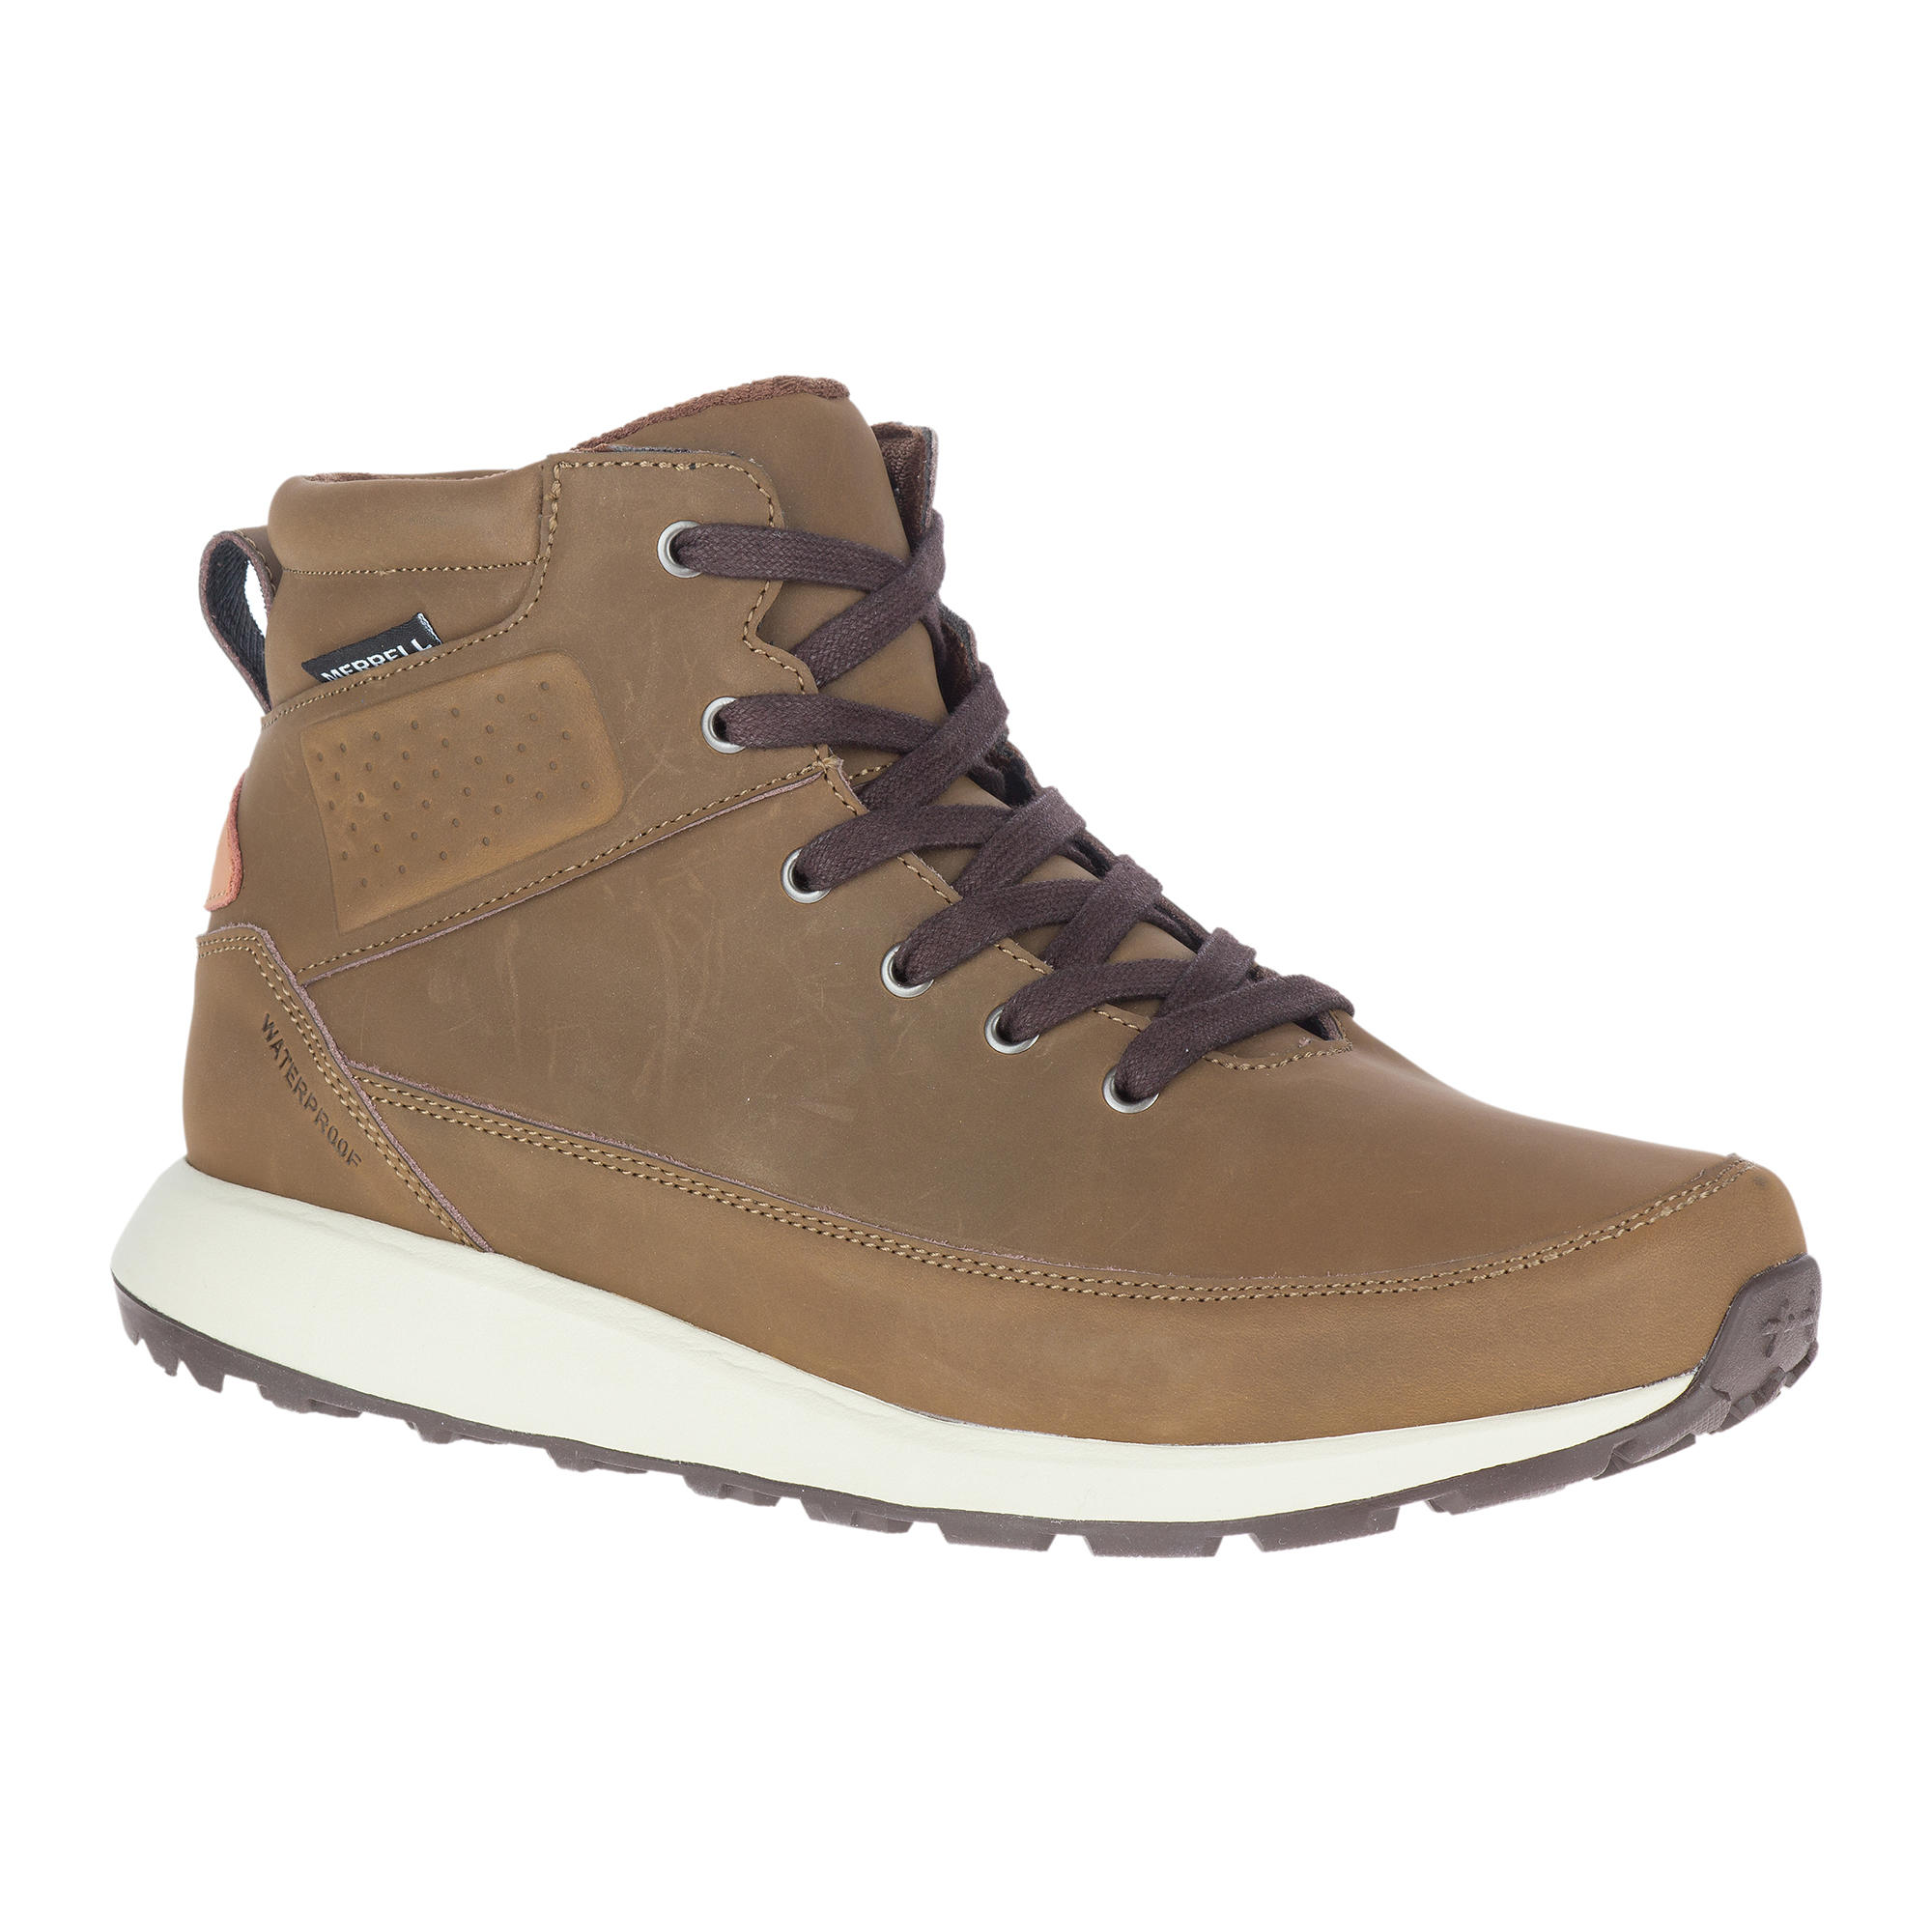 Men's waterproof walking boots - Merrell Billow - Sand 1/8